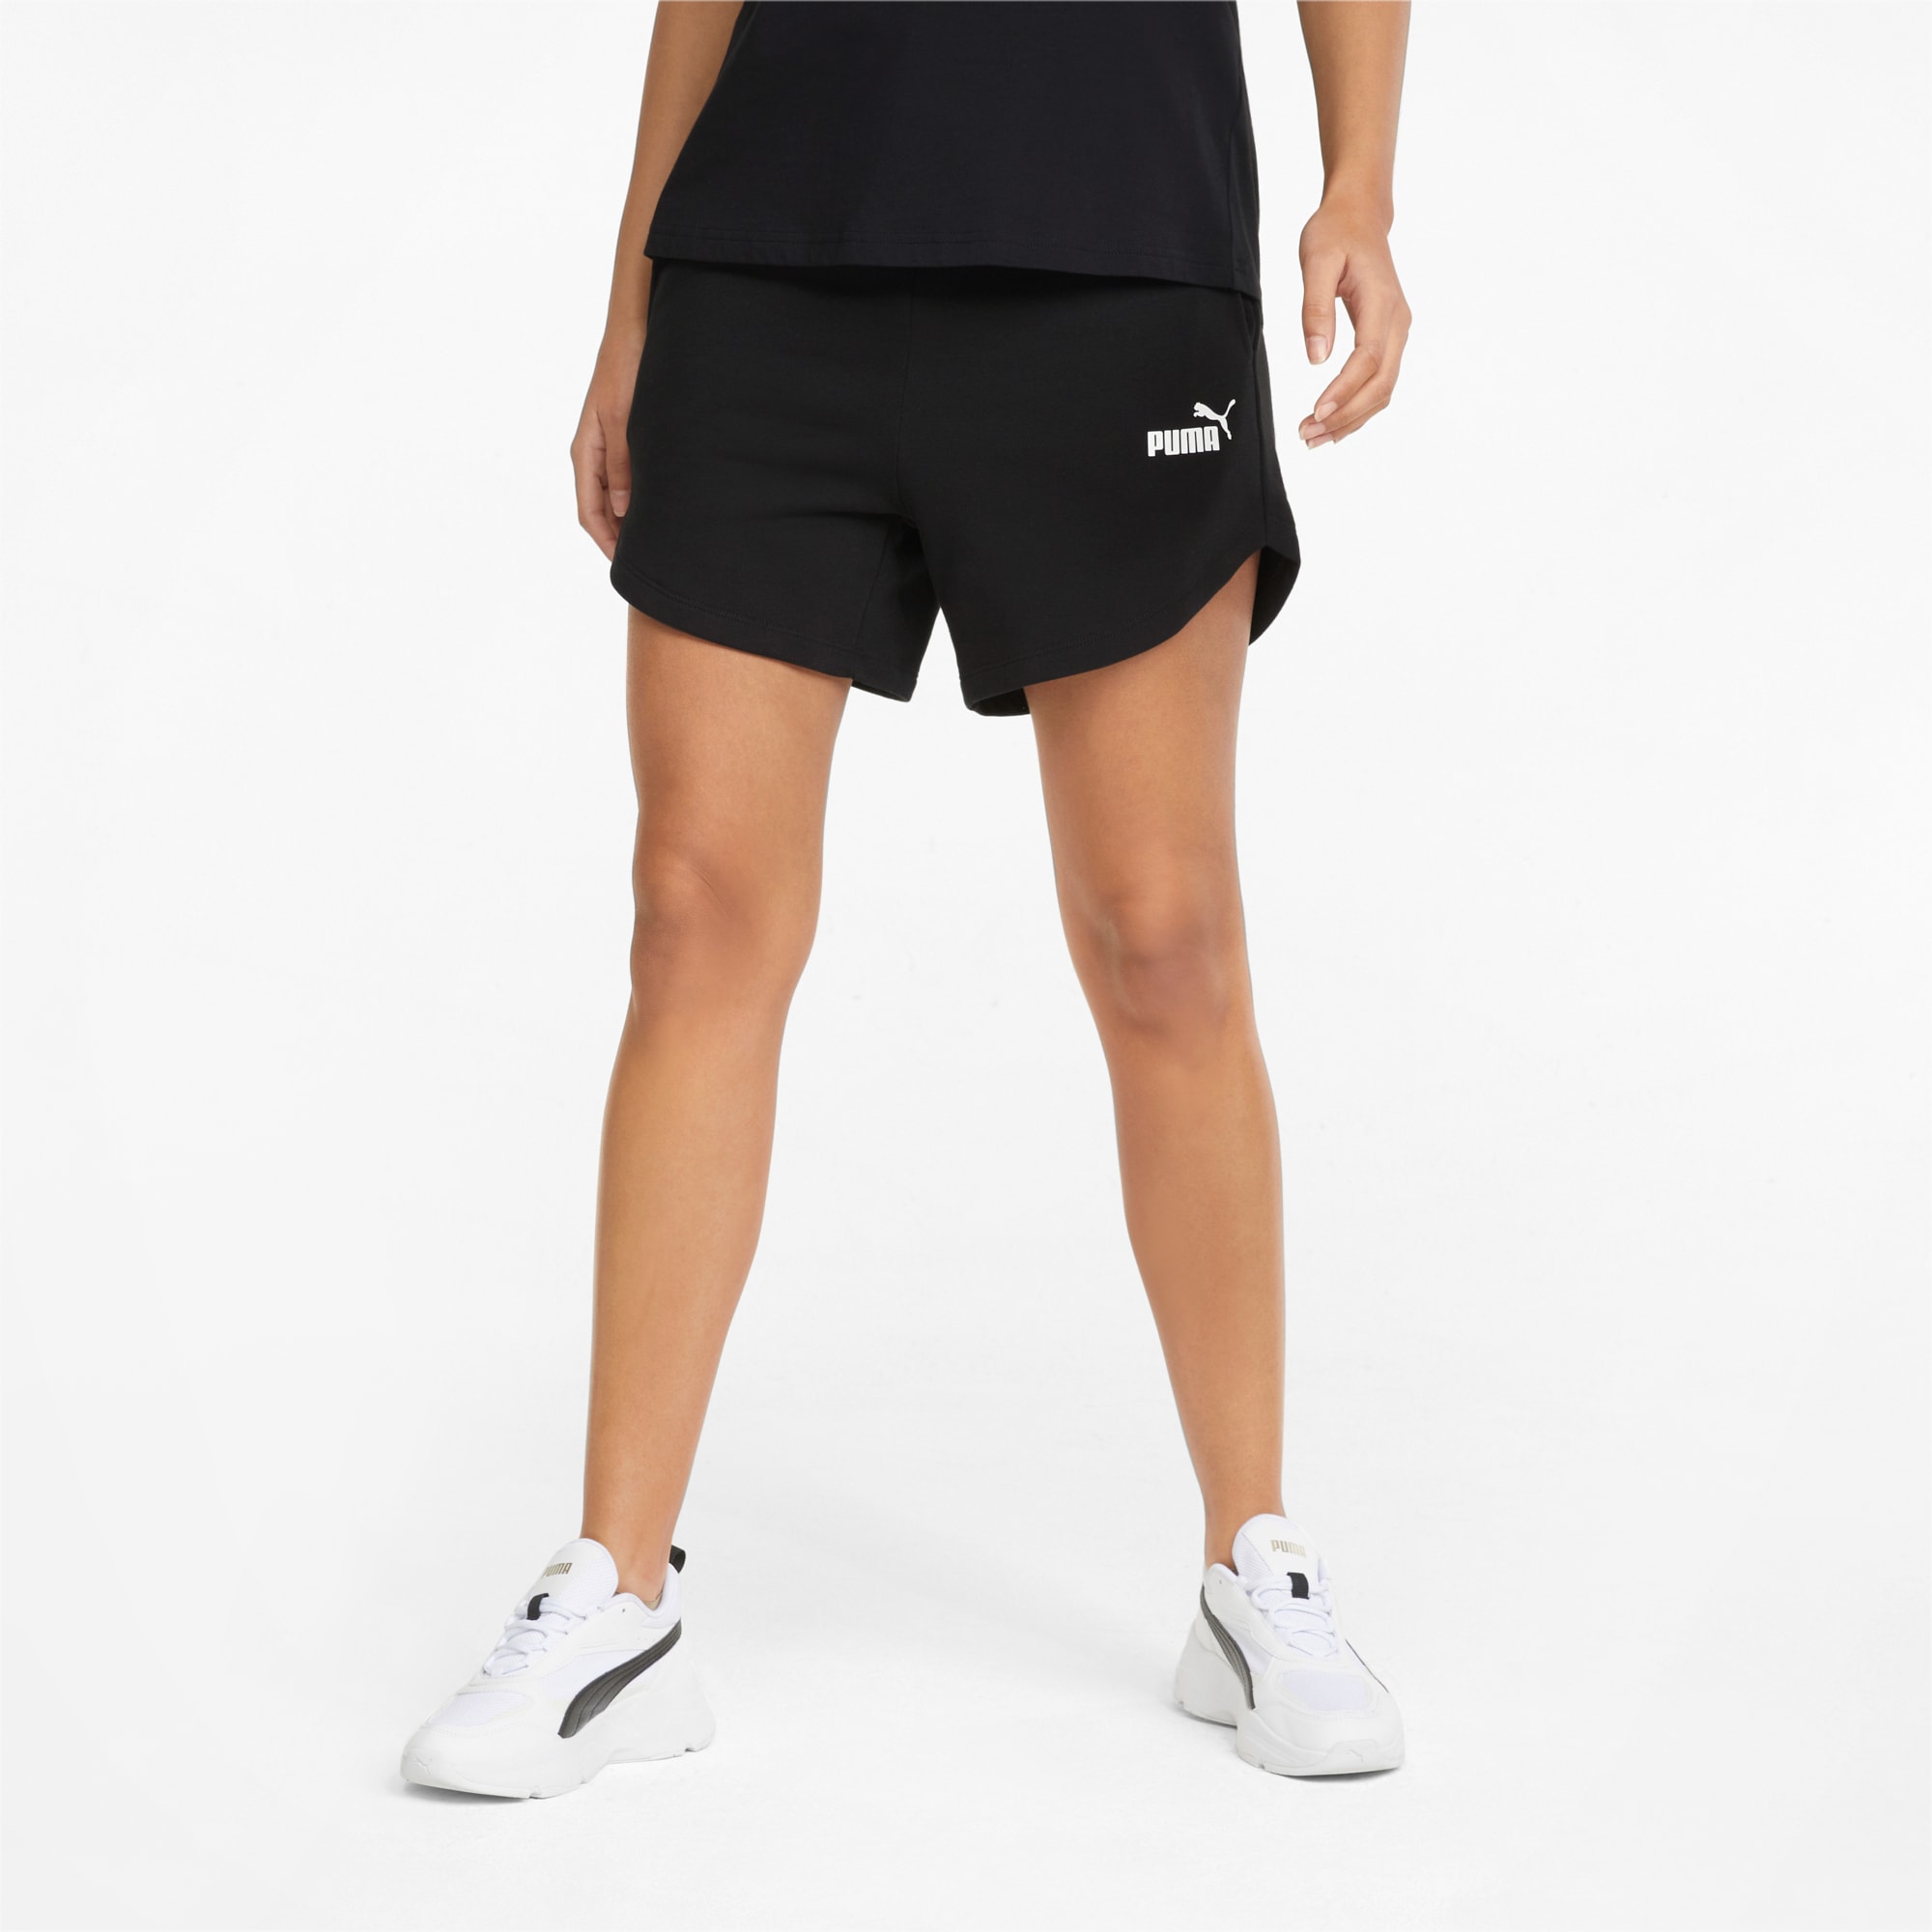 Essentials High Waist Women's Shorts